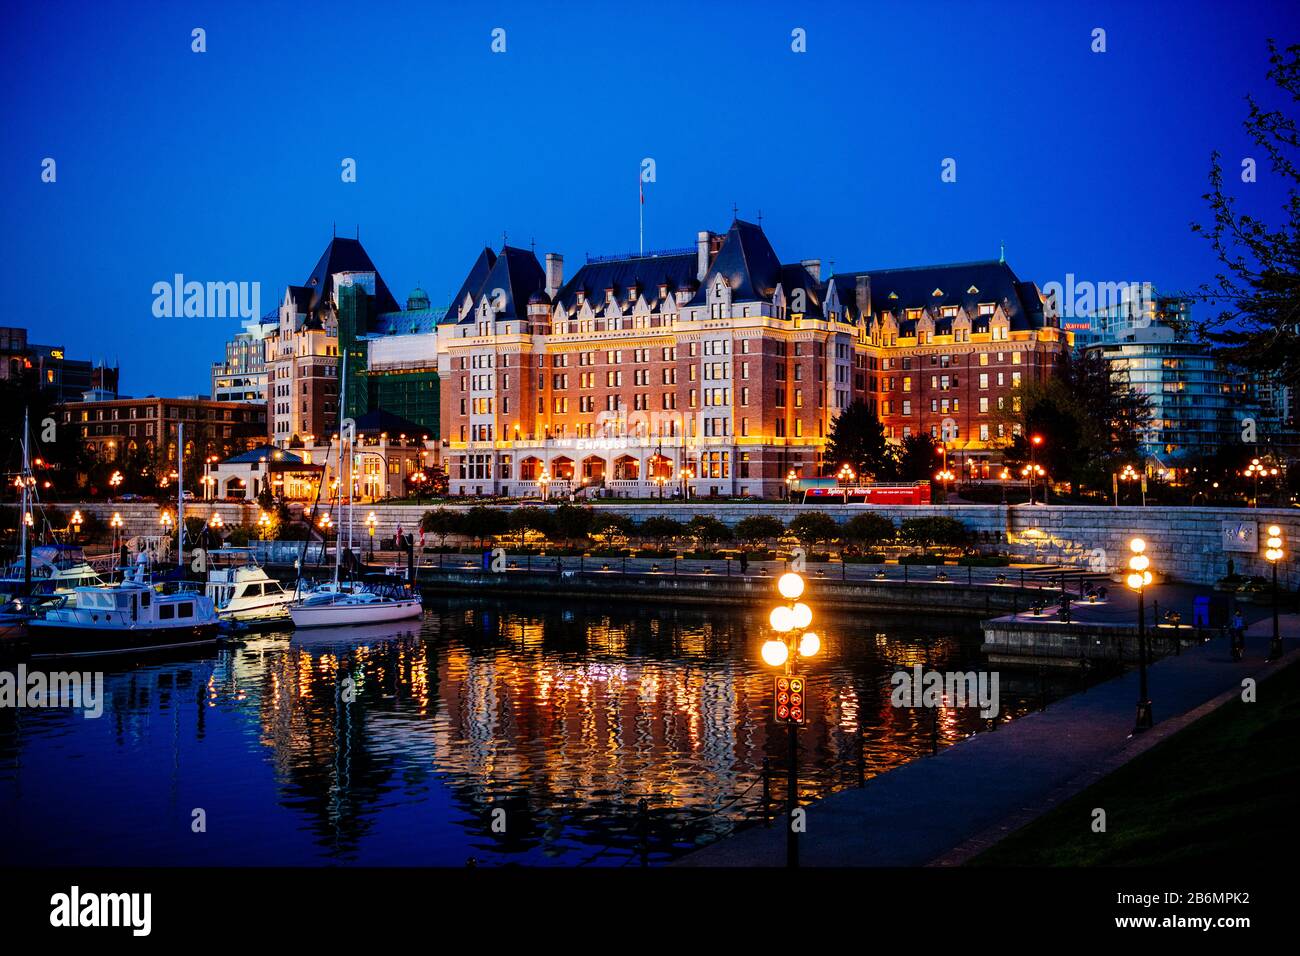 Vista del hotel iluminado, Victoria, British Columbia, Canadá Foto de stock